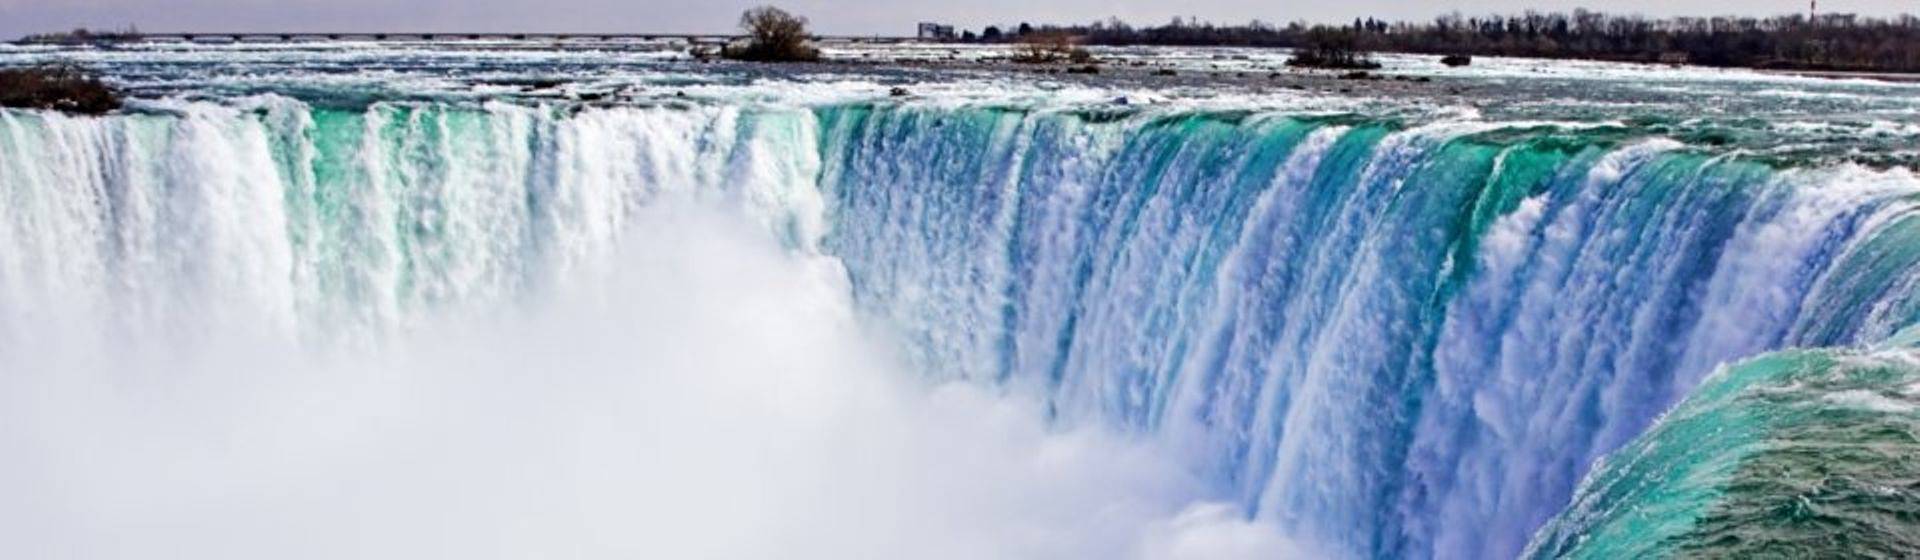 Holidays to Niagara Falls Image